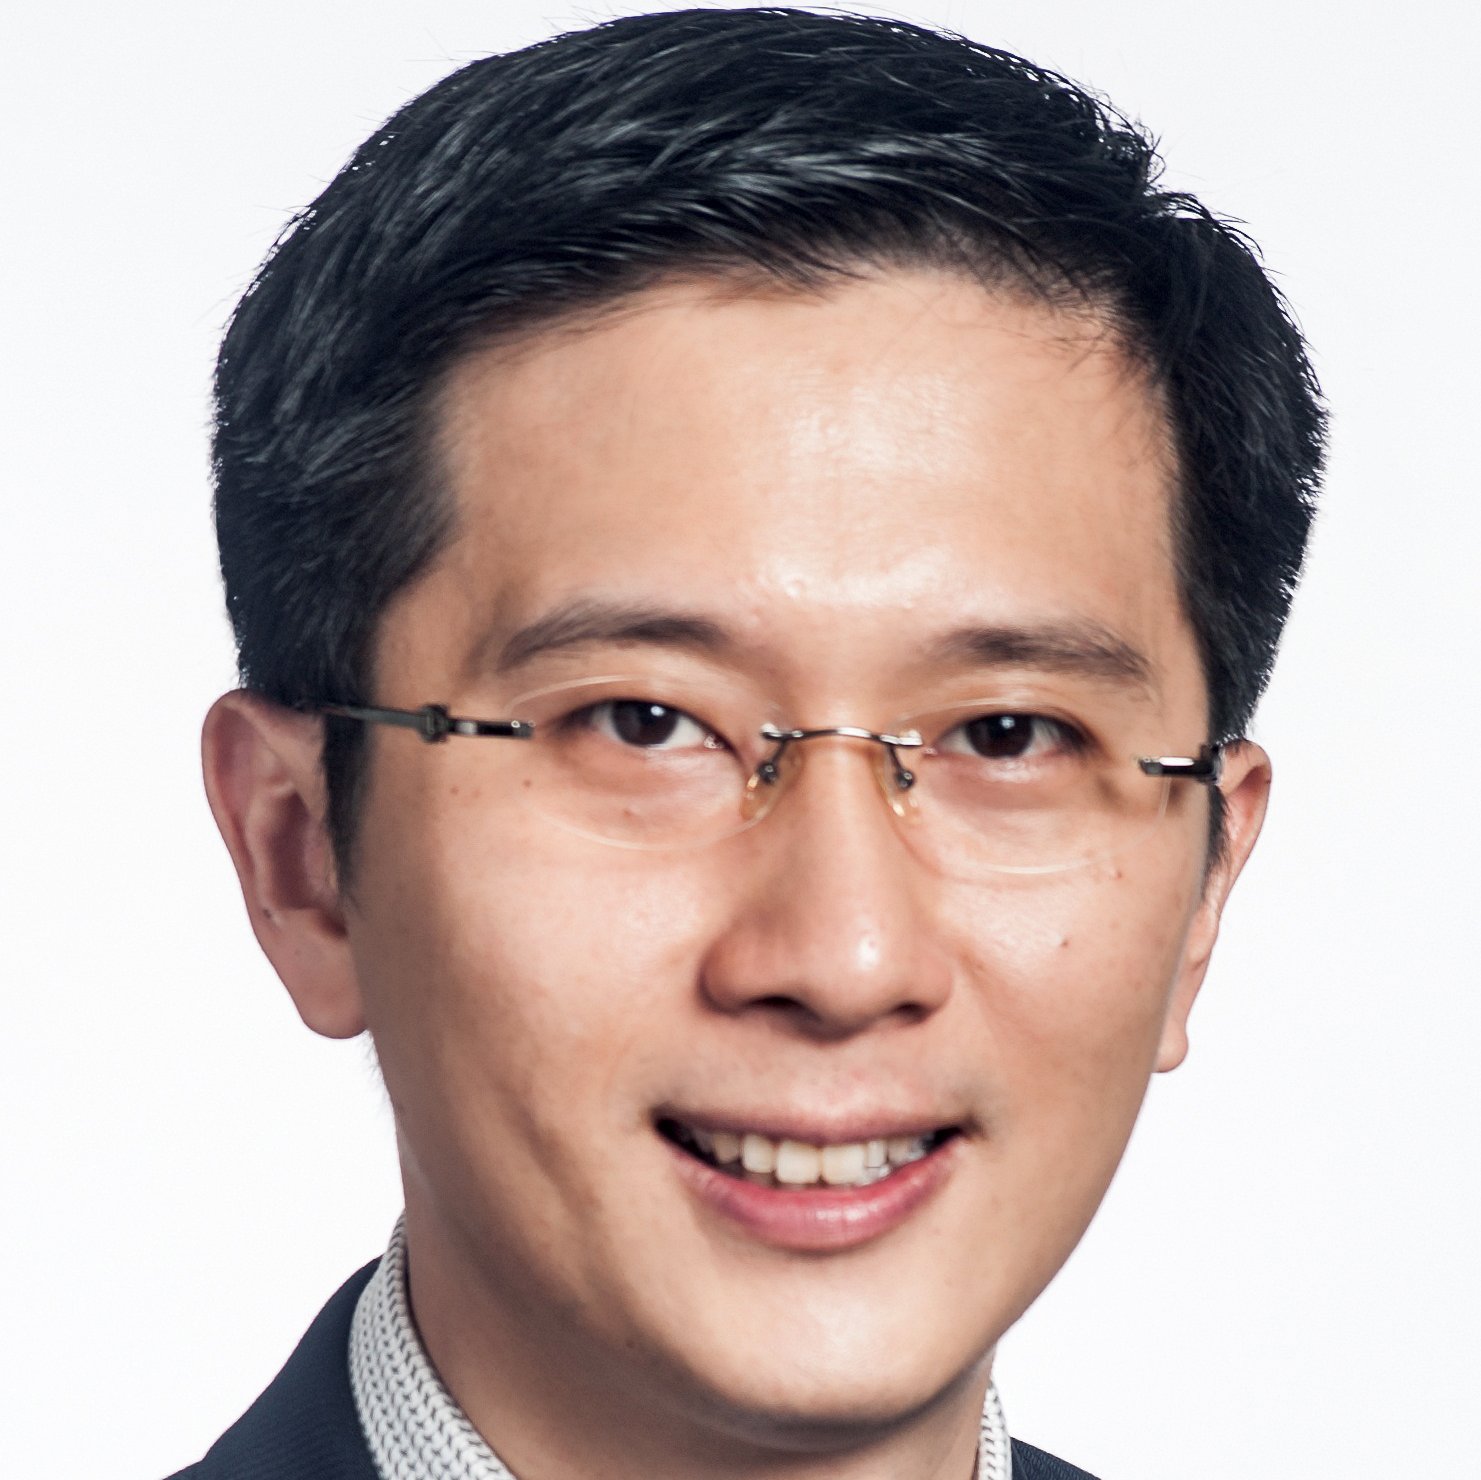 Prof NGIAM Kee Yuan